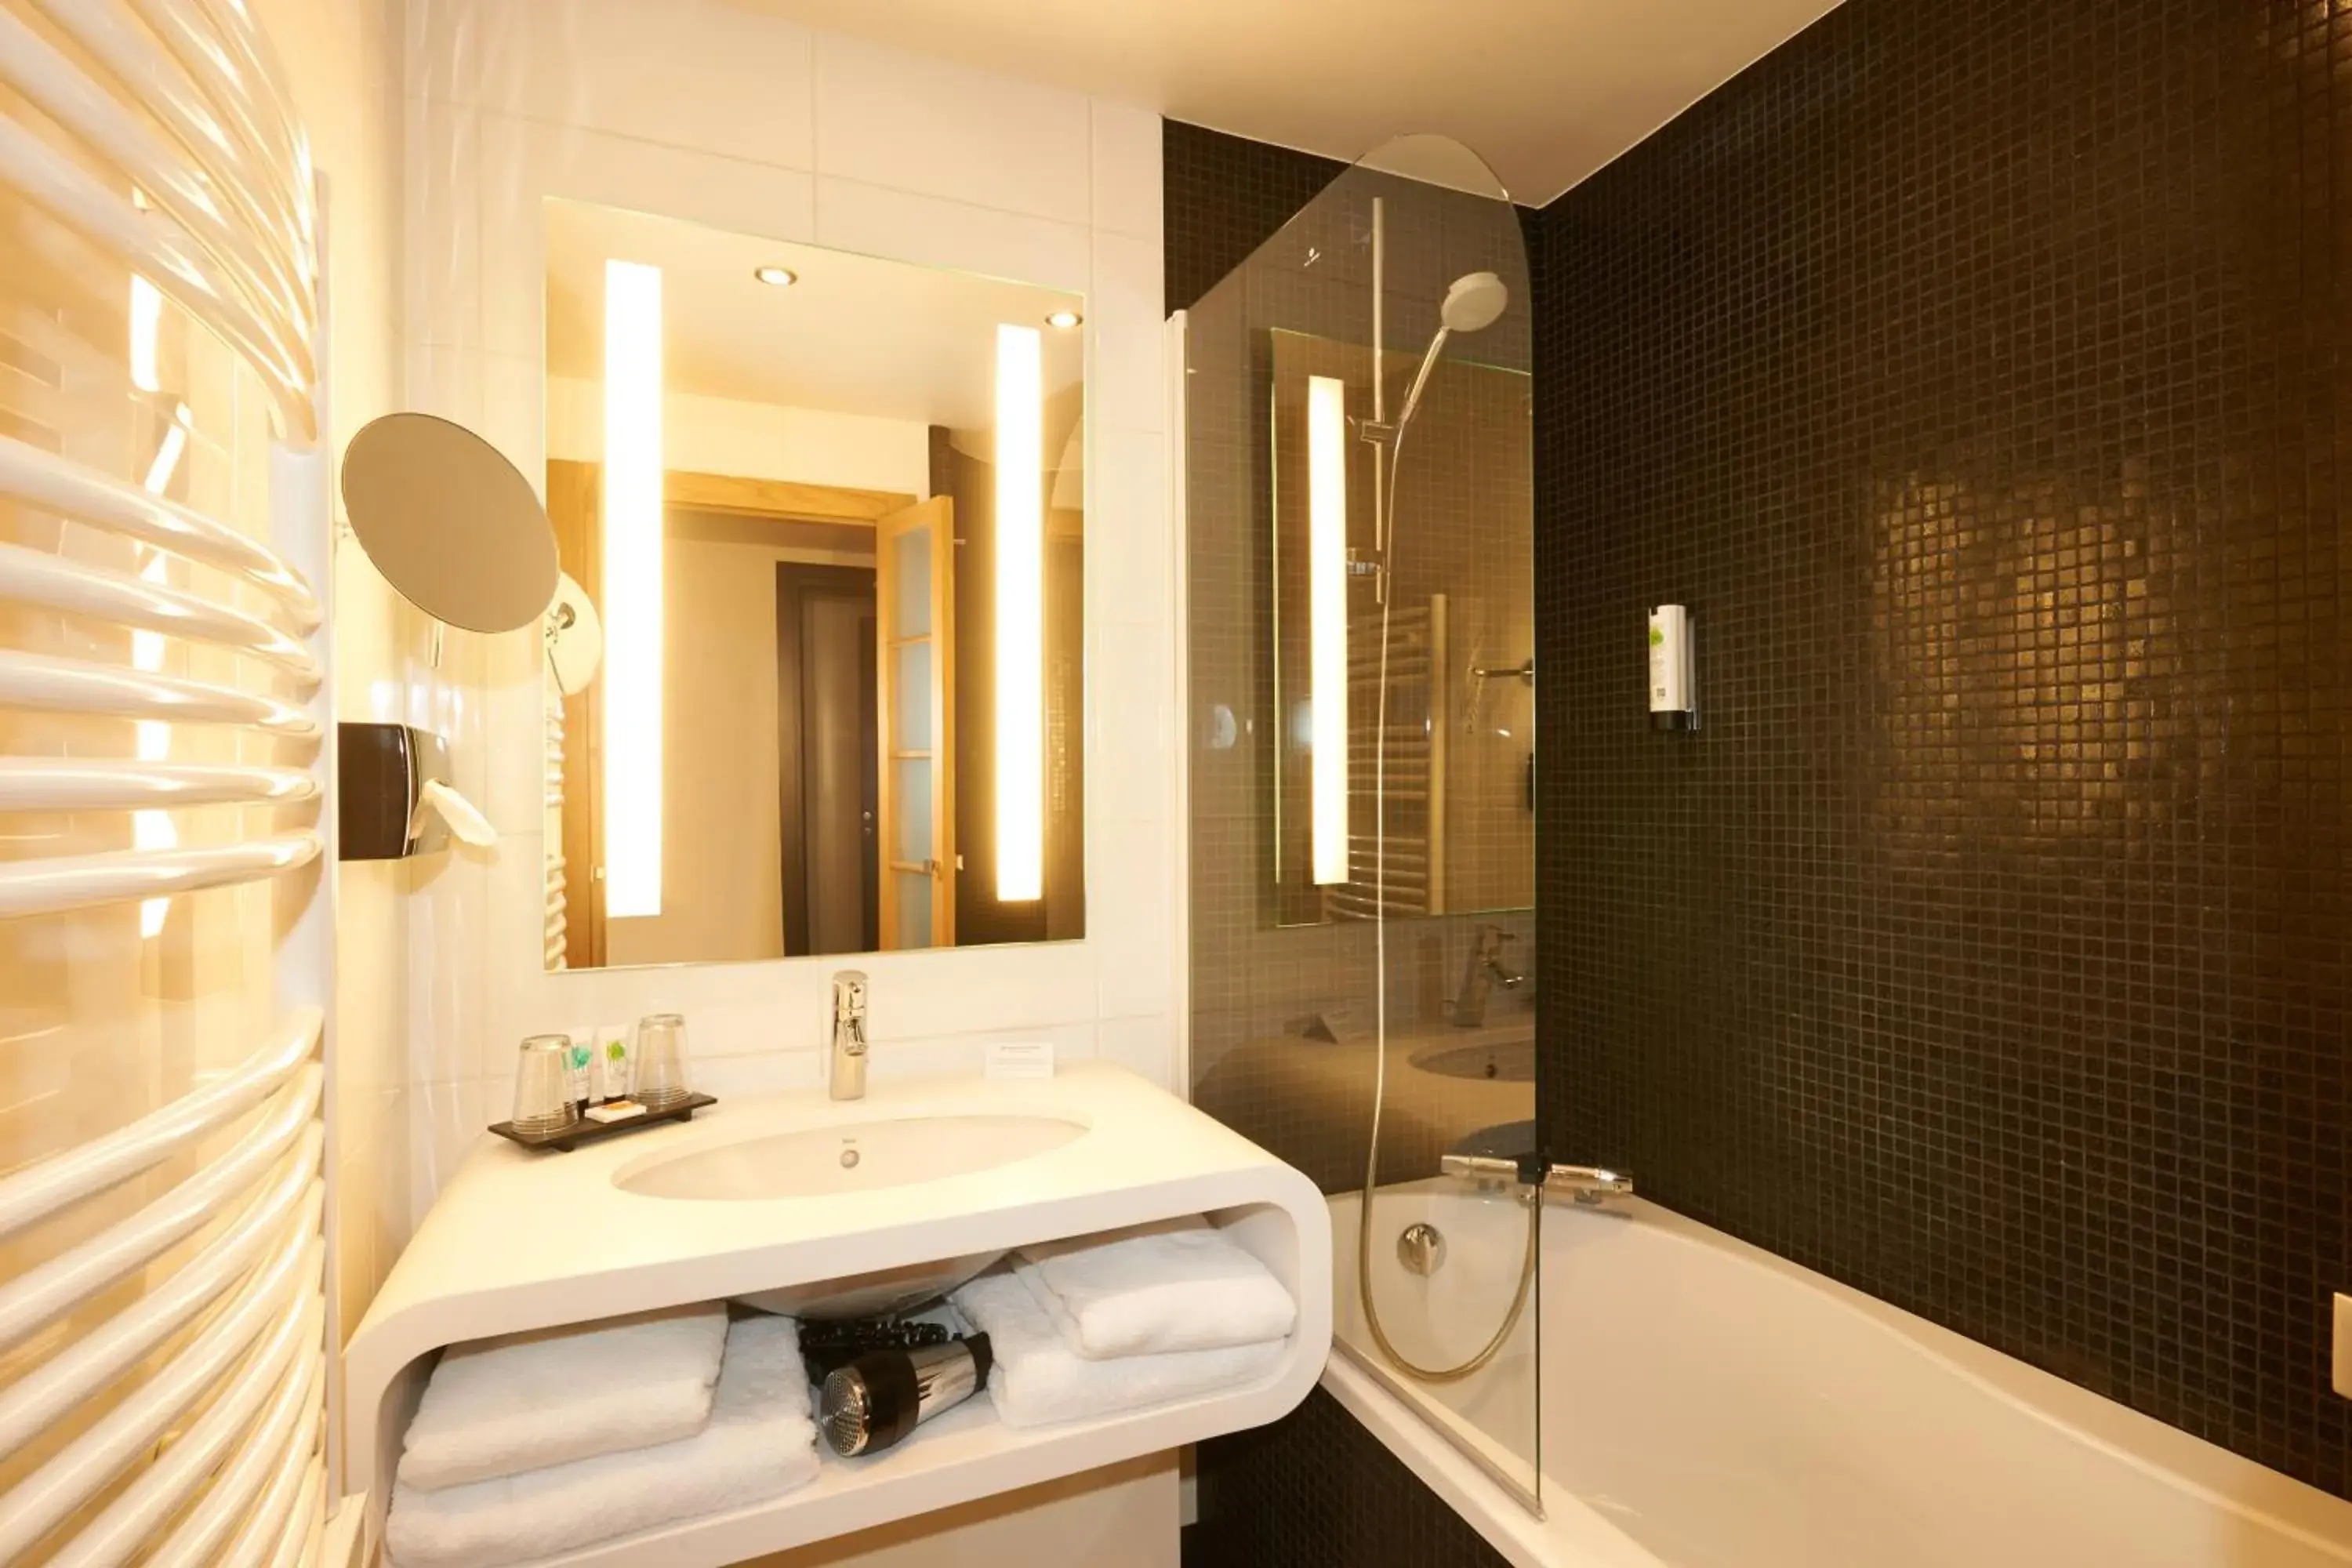 Bathroom in Best Western Plus Hotel Le Rhenan